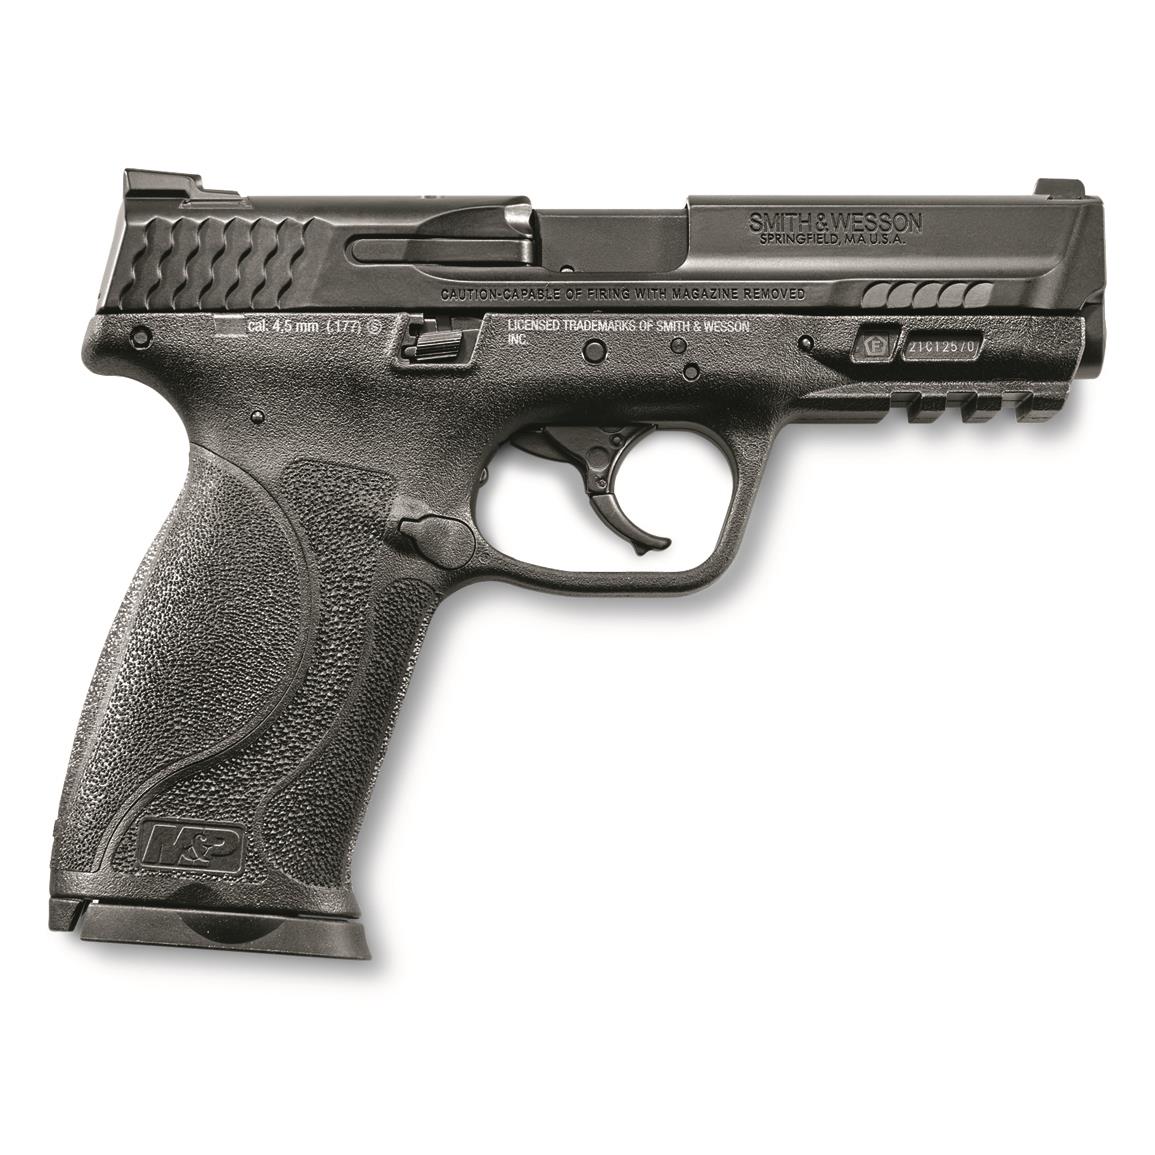 Umarex Smith & Wesson M&P9 M2.0 Air Pistol, .177 Caliber